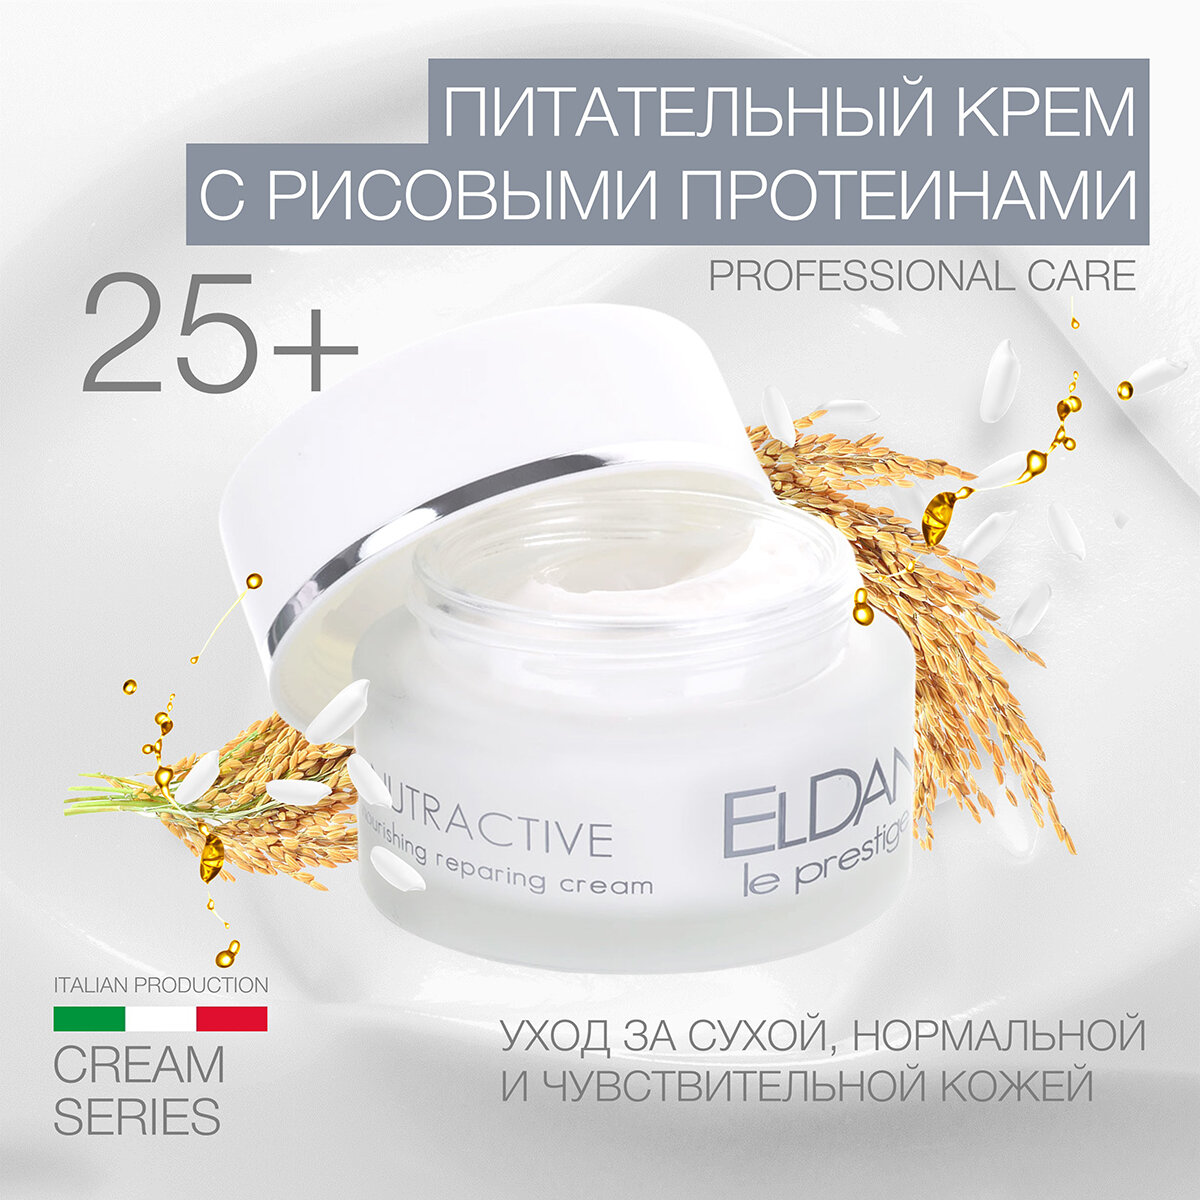 Питательный крем с рисовыми протеинами ELDAN cosmetics для кожи любого типа, 50 мл